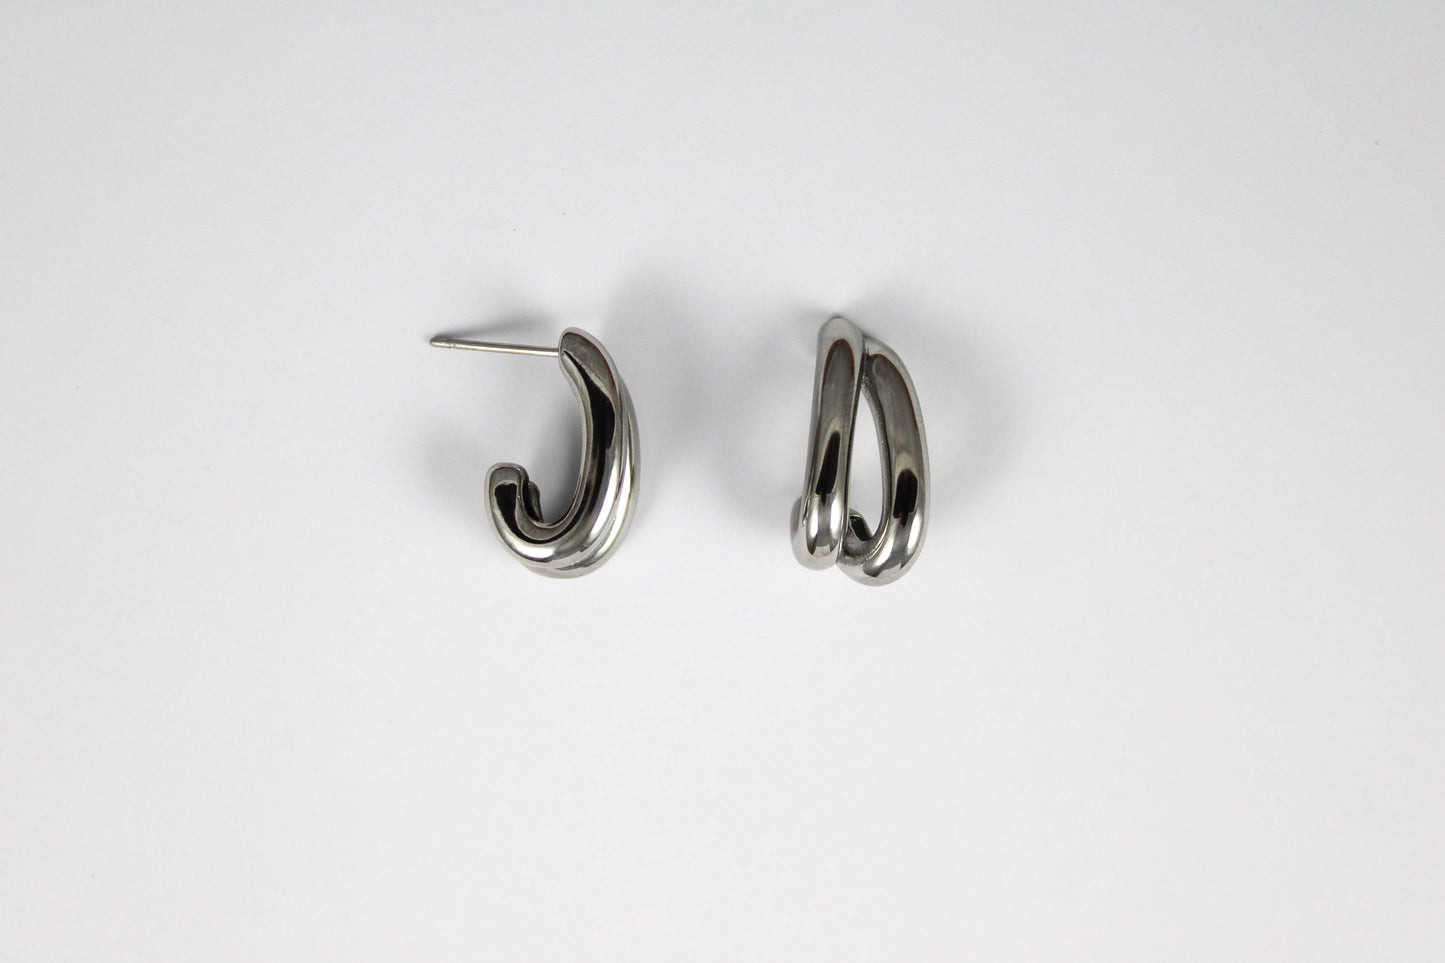 Mizar silver earrings